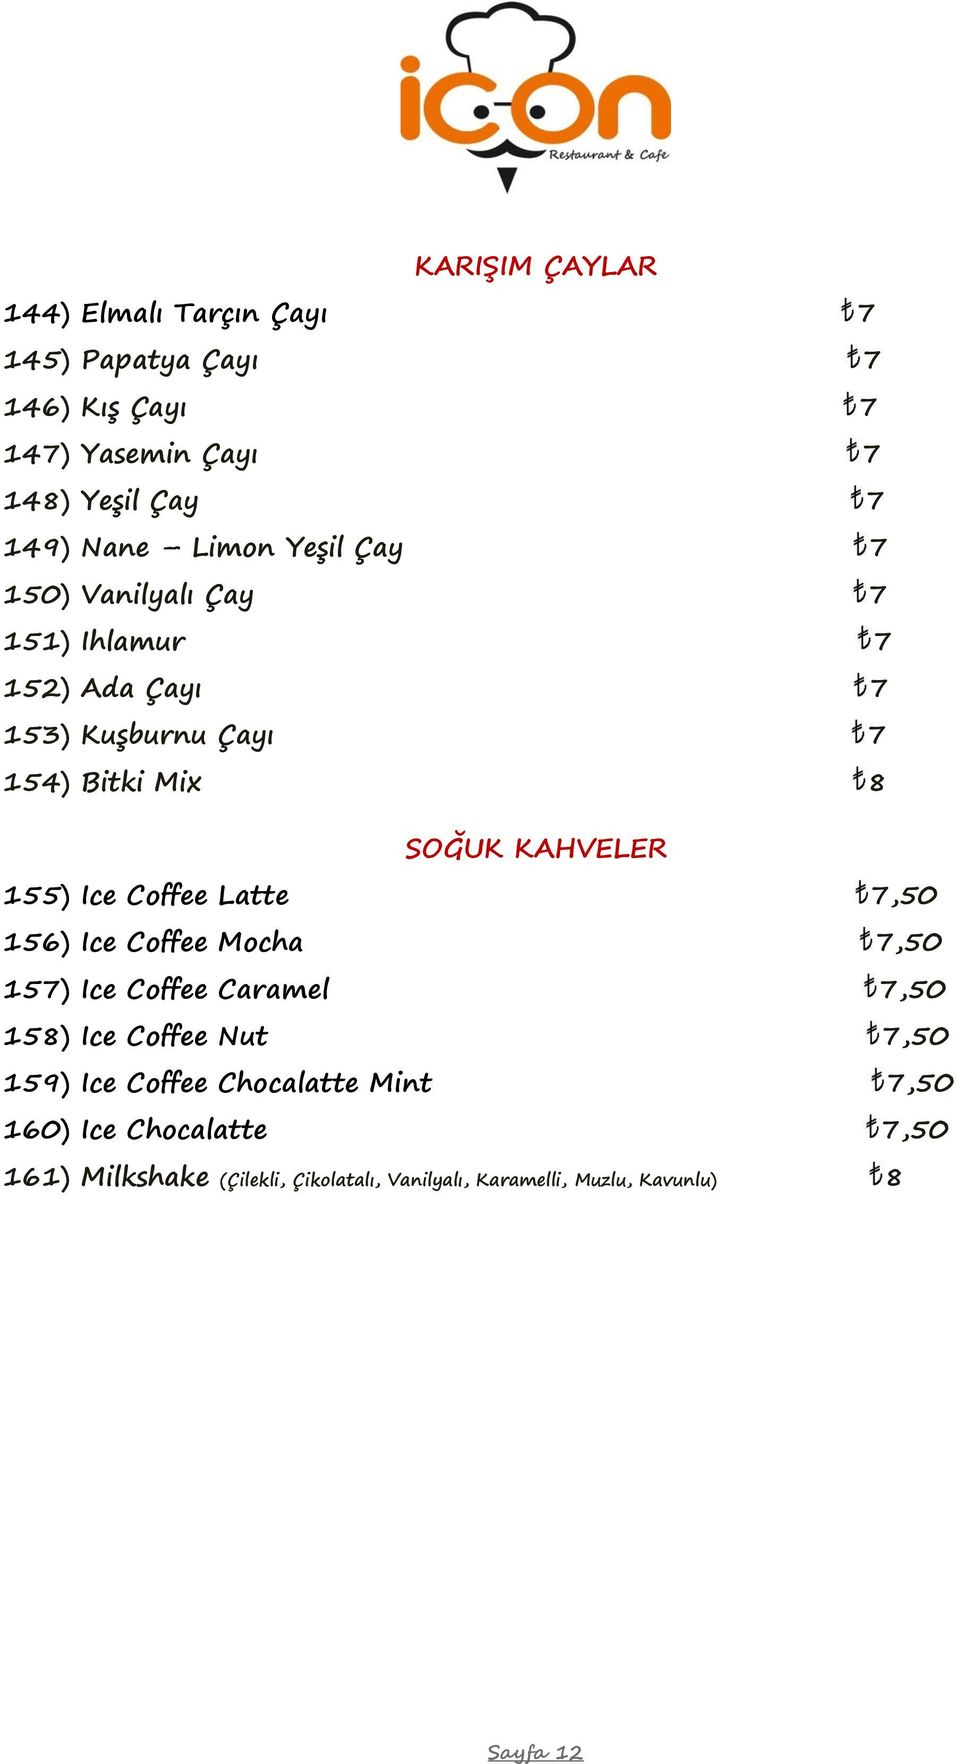 155) Ice Coffee Latte 7,50 156) Ice Coffee Mocha 7,50 157) Ice Coffee Caramel 7,50 158) Ice Coffee Nut 7,50 159) Ice Coffee